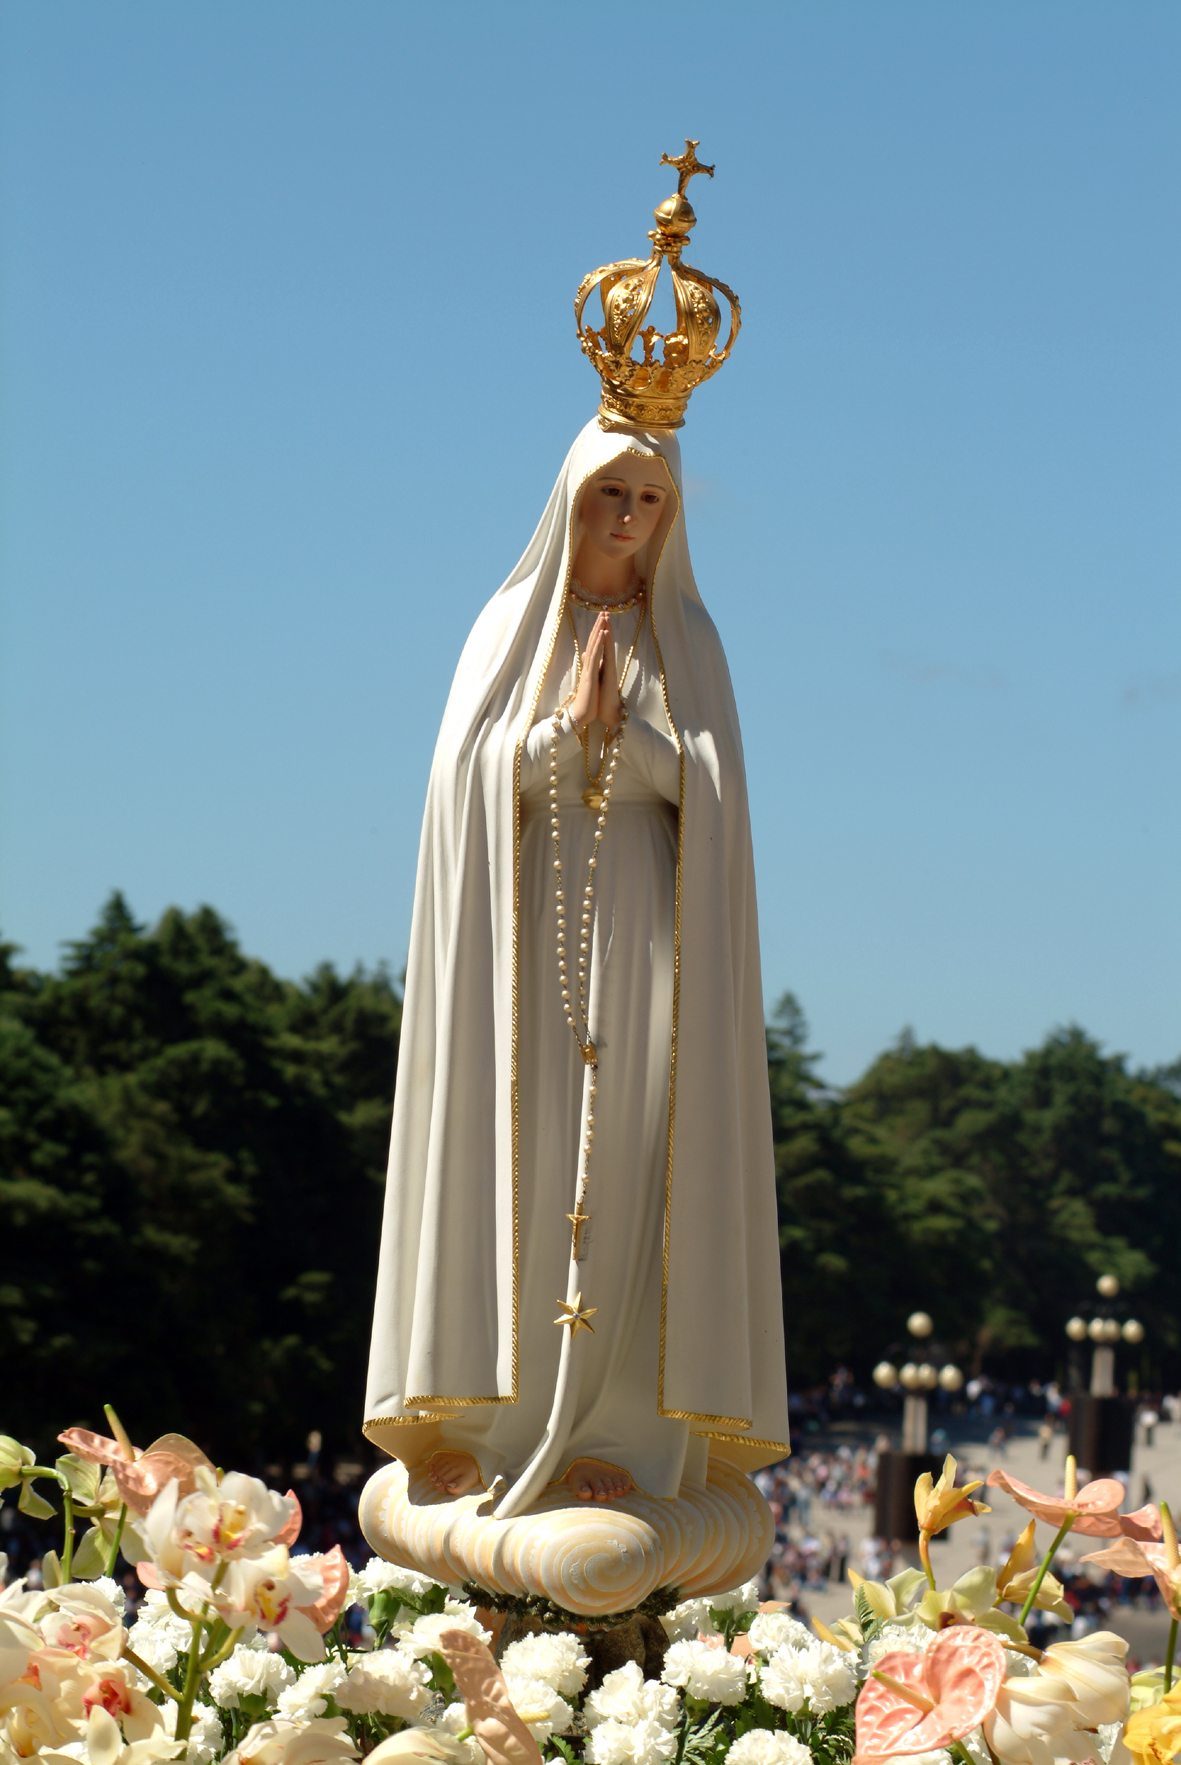 Peregrinación de la Virgen de Fátima